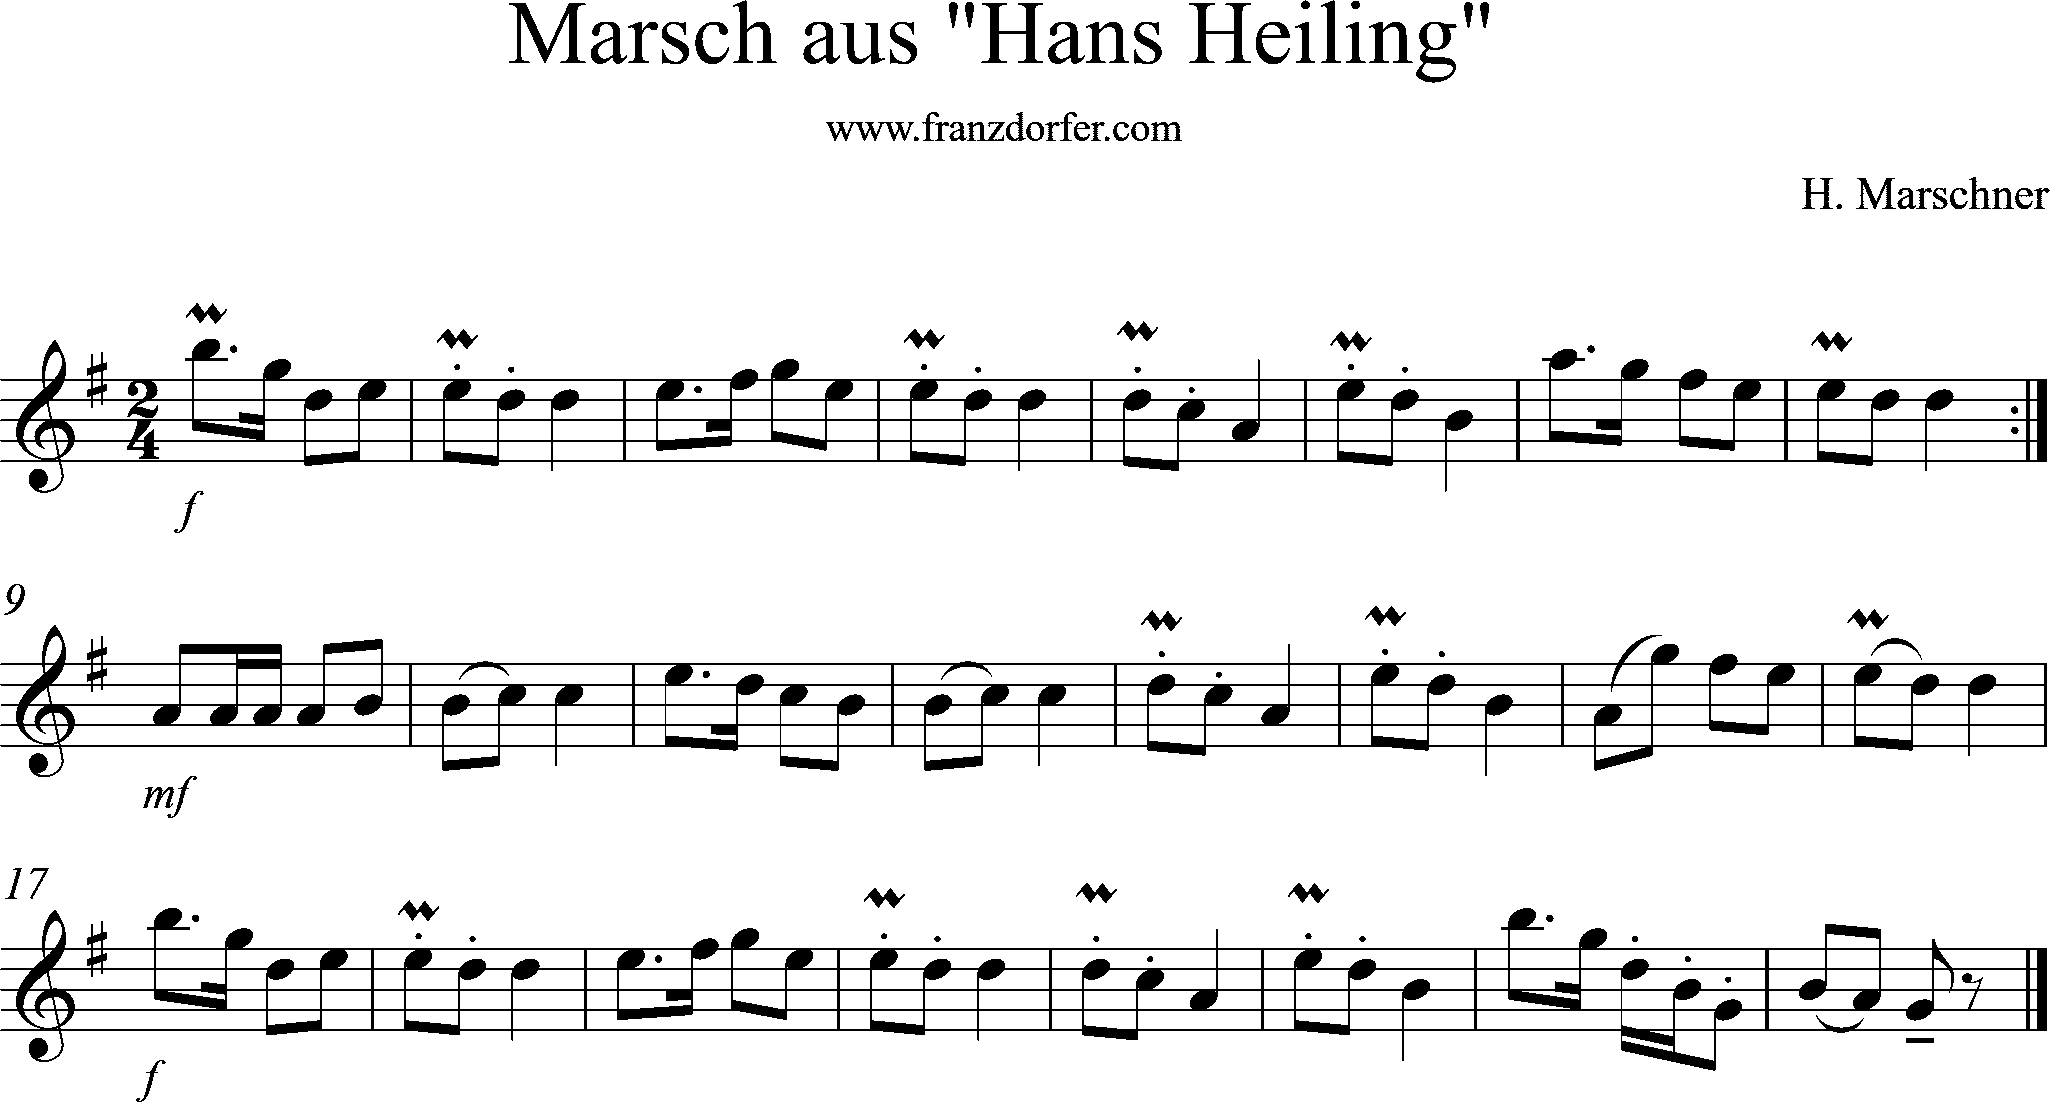 Noten -Marsch aus Hans Heiling